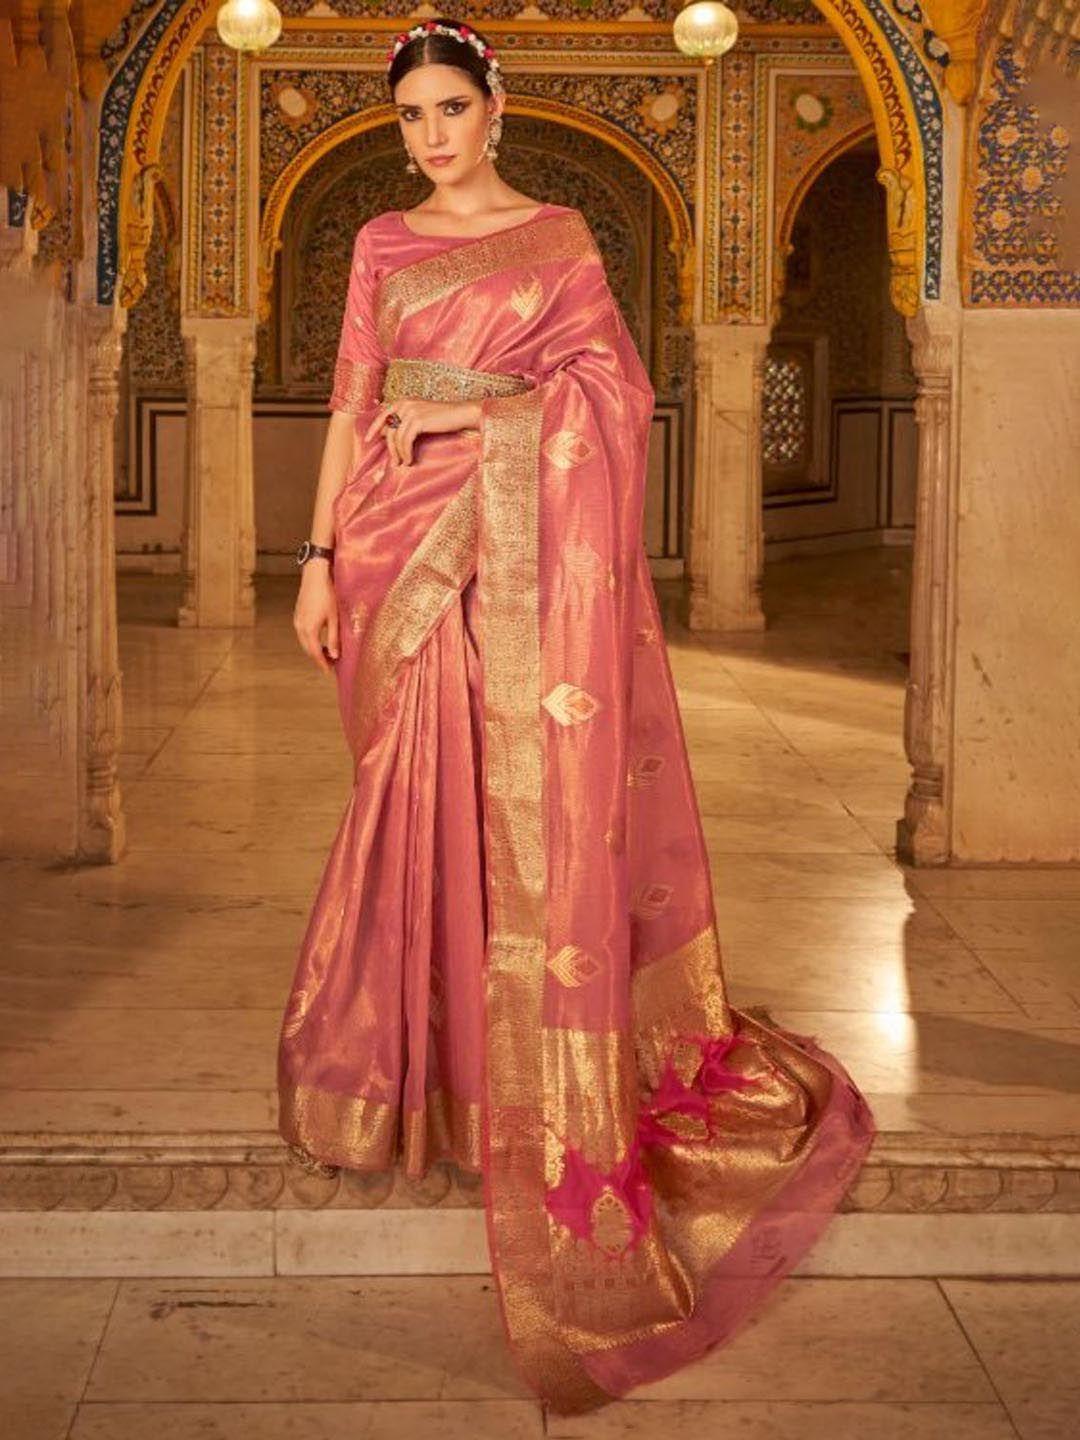 devatithi woven design zari banarasi saree